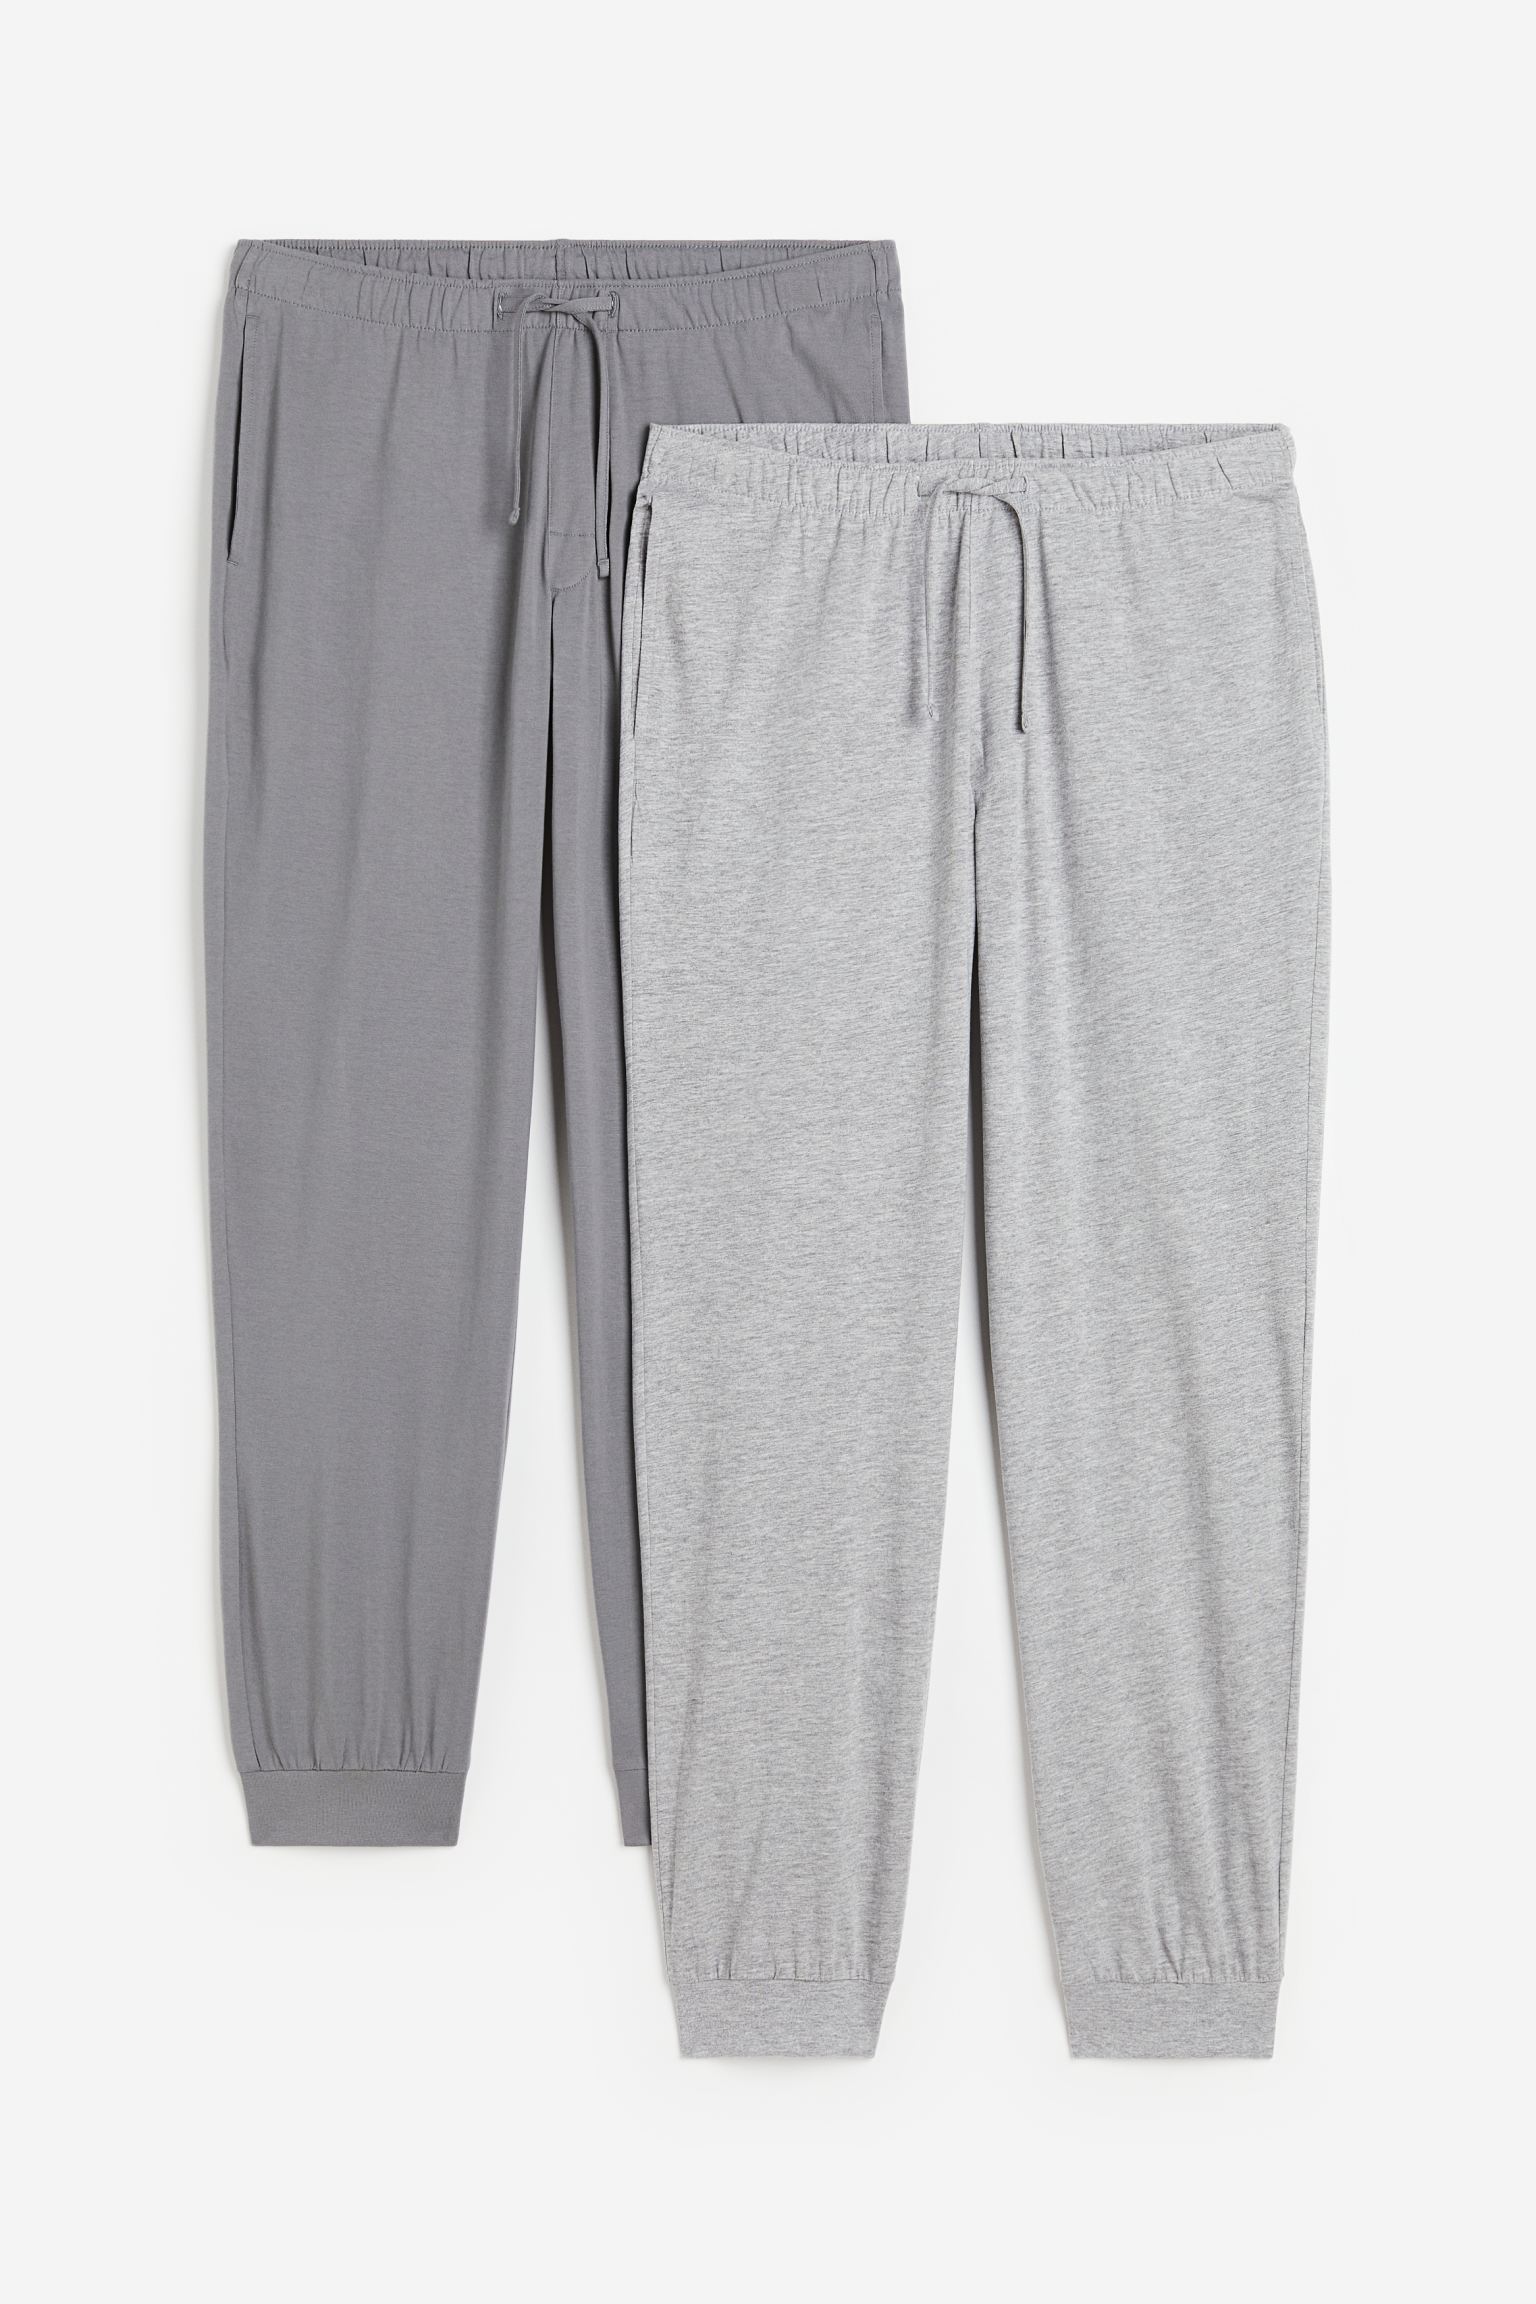 Комплект брюк H&M Regular Fit Pajama, 2 предмета, светло-серый/серый